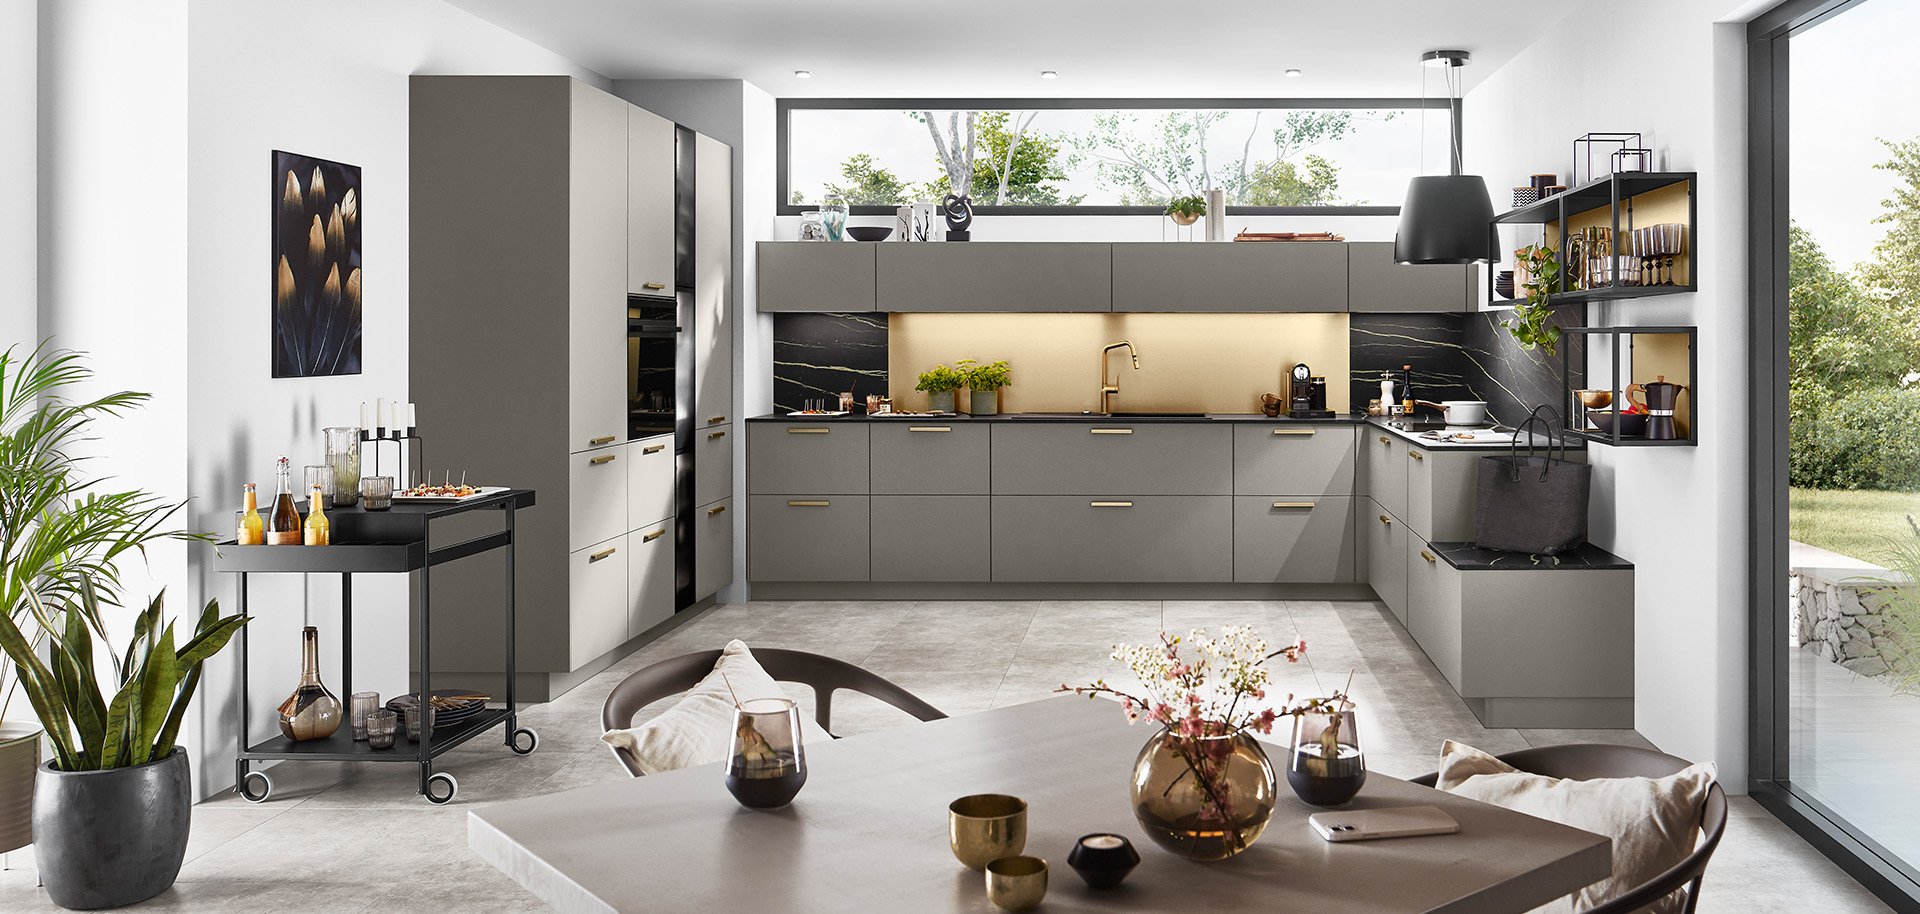 Moderne Kücheninnenräume mit eleganten grauen Schränken, eingebauten Geräten und einem geräumigen Essbereich, der zeitgenössisches Design und minimalistische Dekoration zeigt.